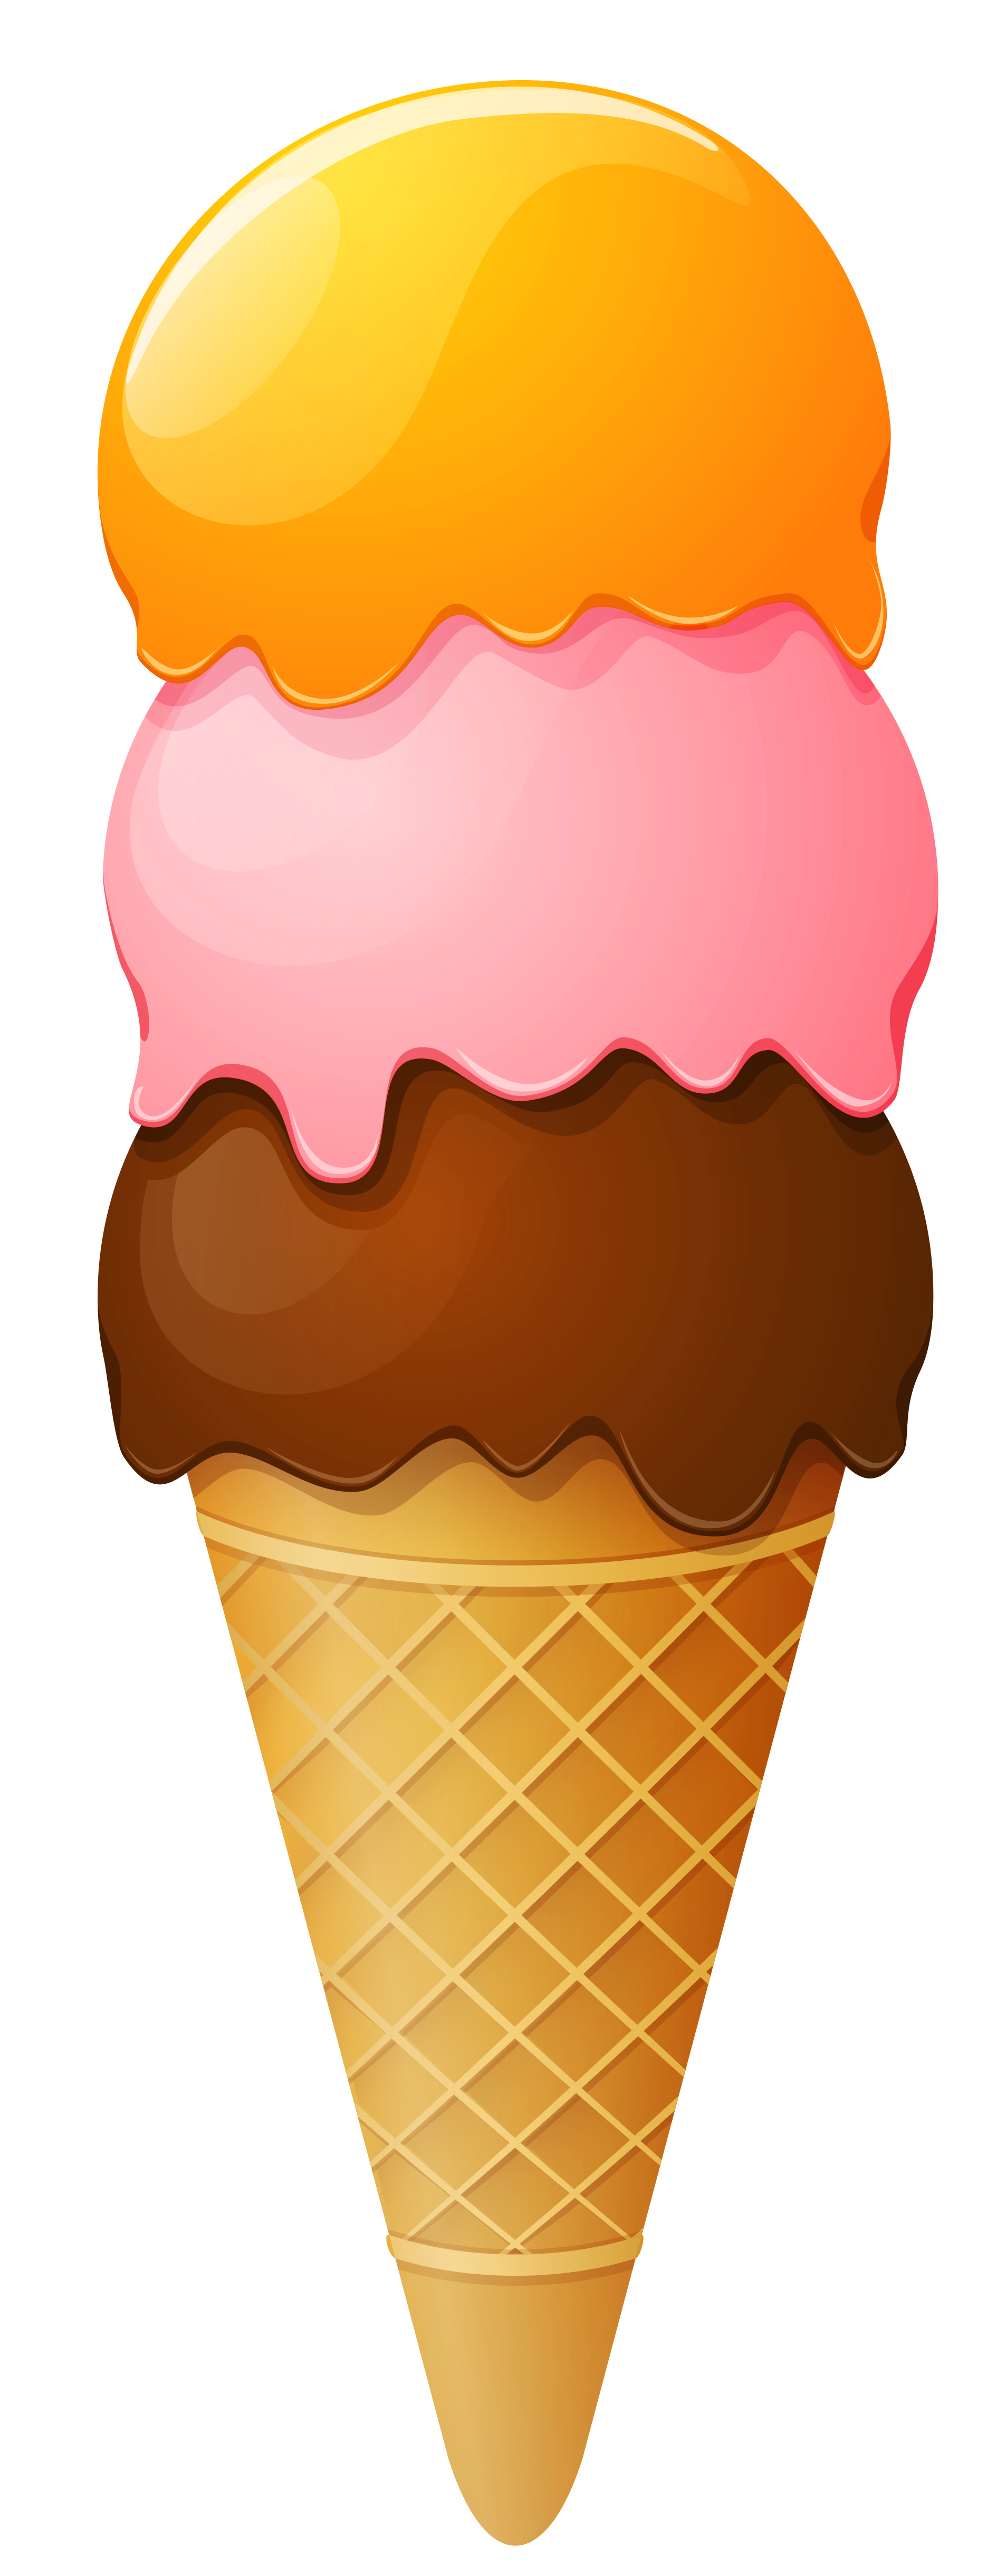 ไอศกรีม